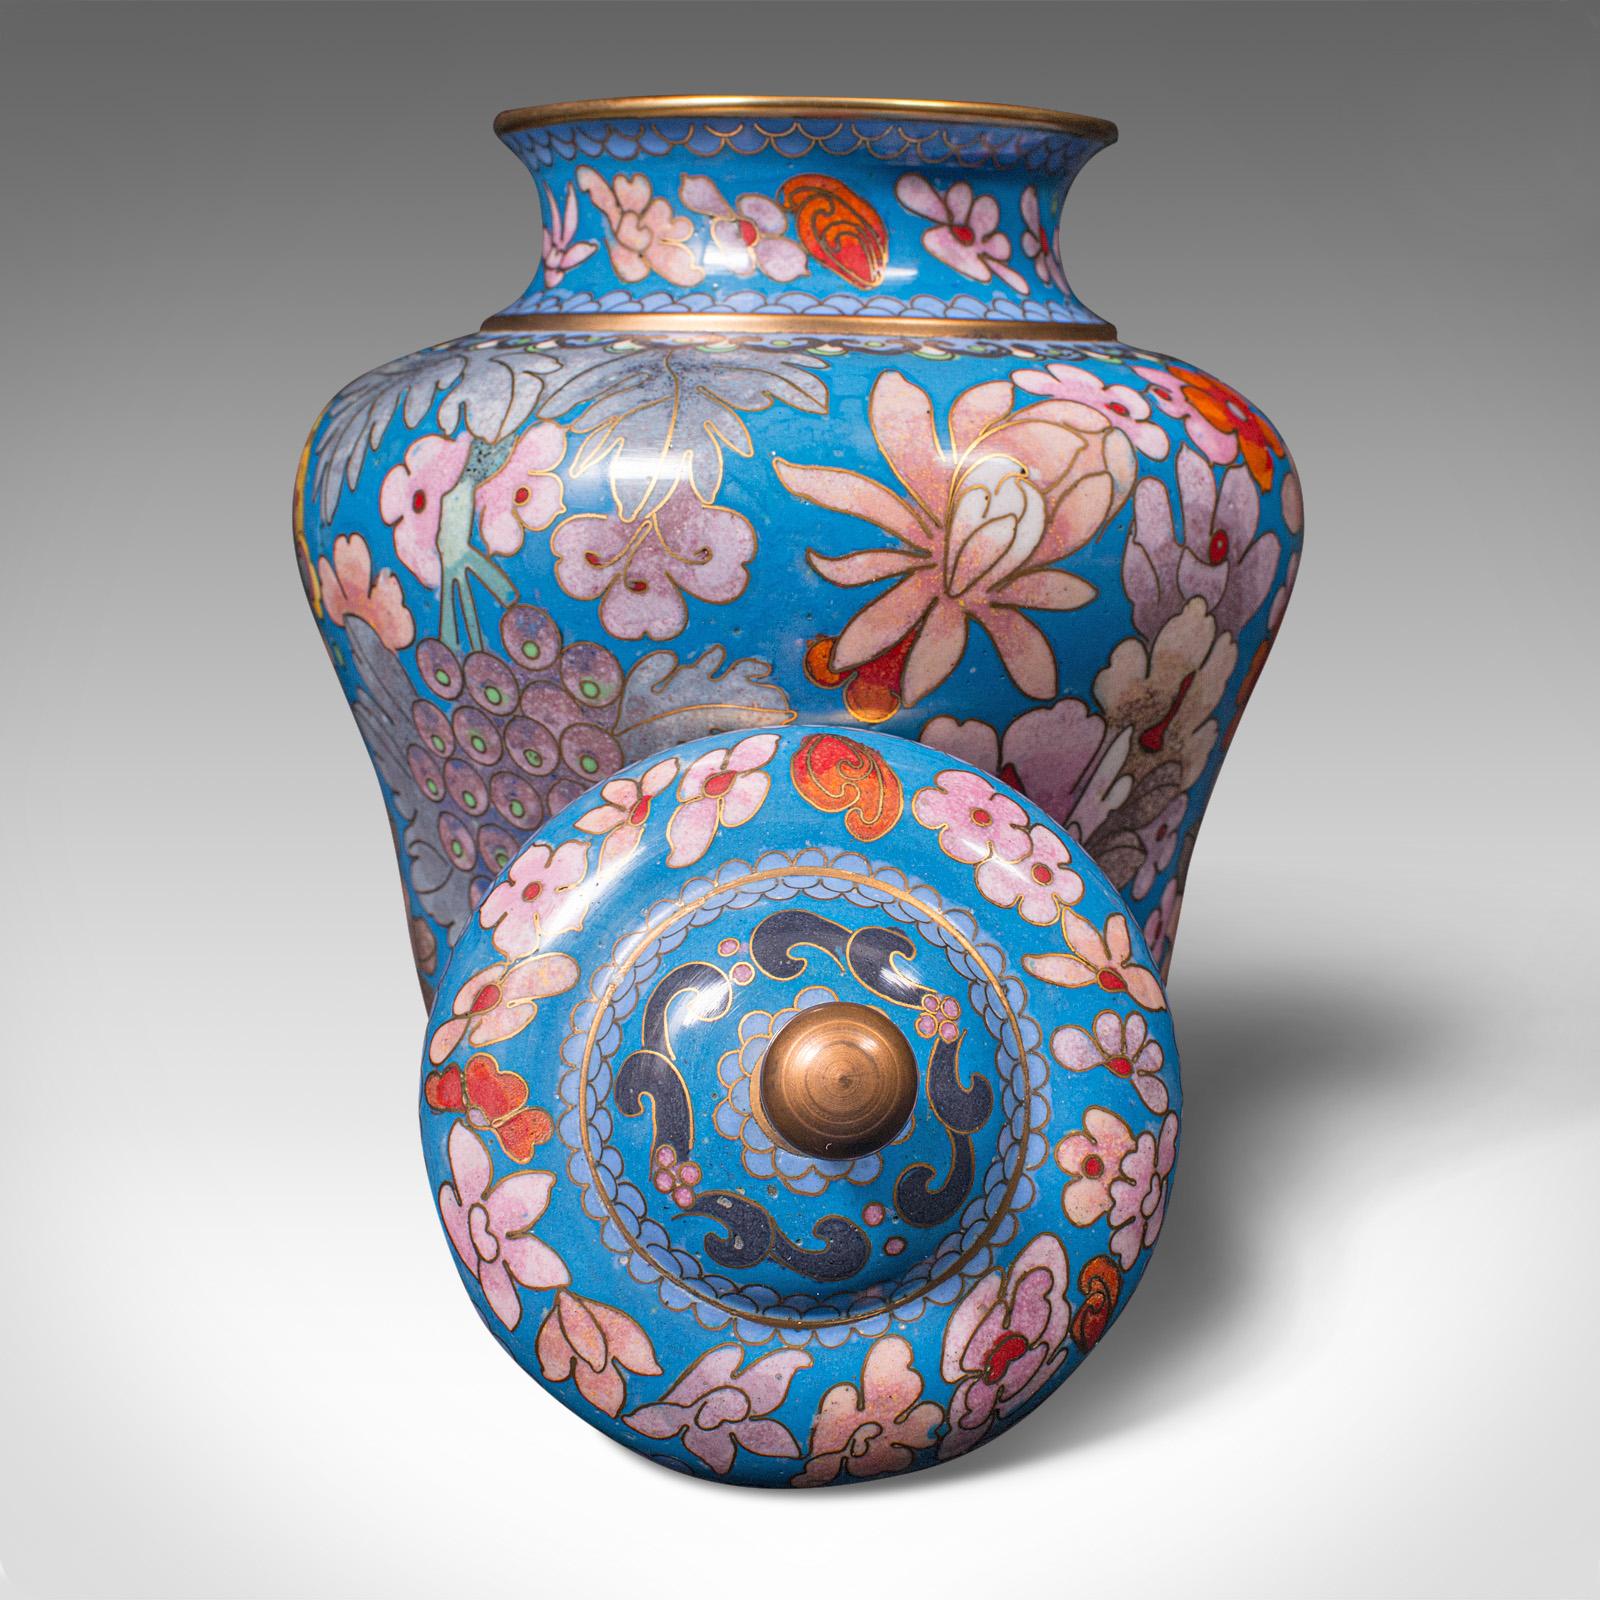 Pair of Antique Cloisonne Spice Jars, English Ceramic, Decorative Pot, Victorian For Sale 4